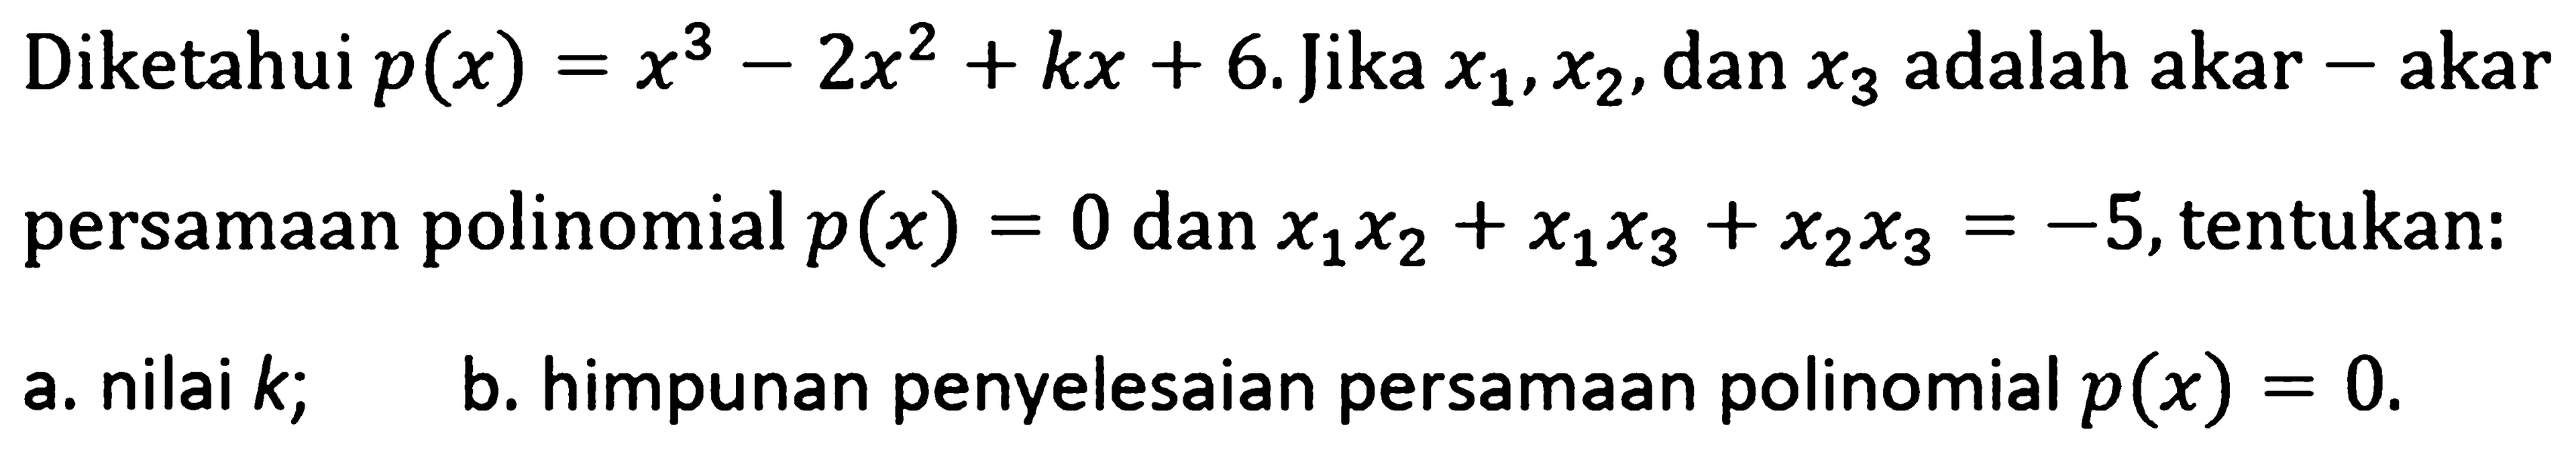 Diketahui p(x)=x^3-2x^2+kx+6. Jika x1,x2, dan x3 adalah akar-akar persamaan polinomial p(x)=0 dan x1x2+x1x3+x2x3=-5, tentukan: a. nilai k; b. himpunan penyelesaian persamaan polinomial p(x)=0.